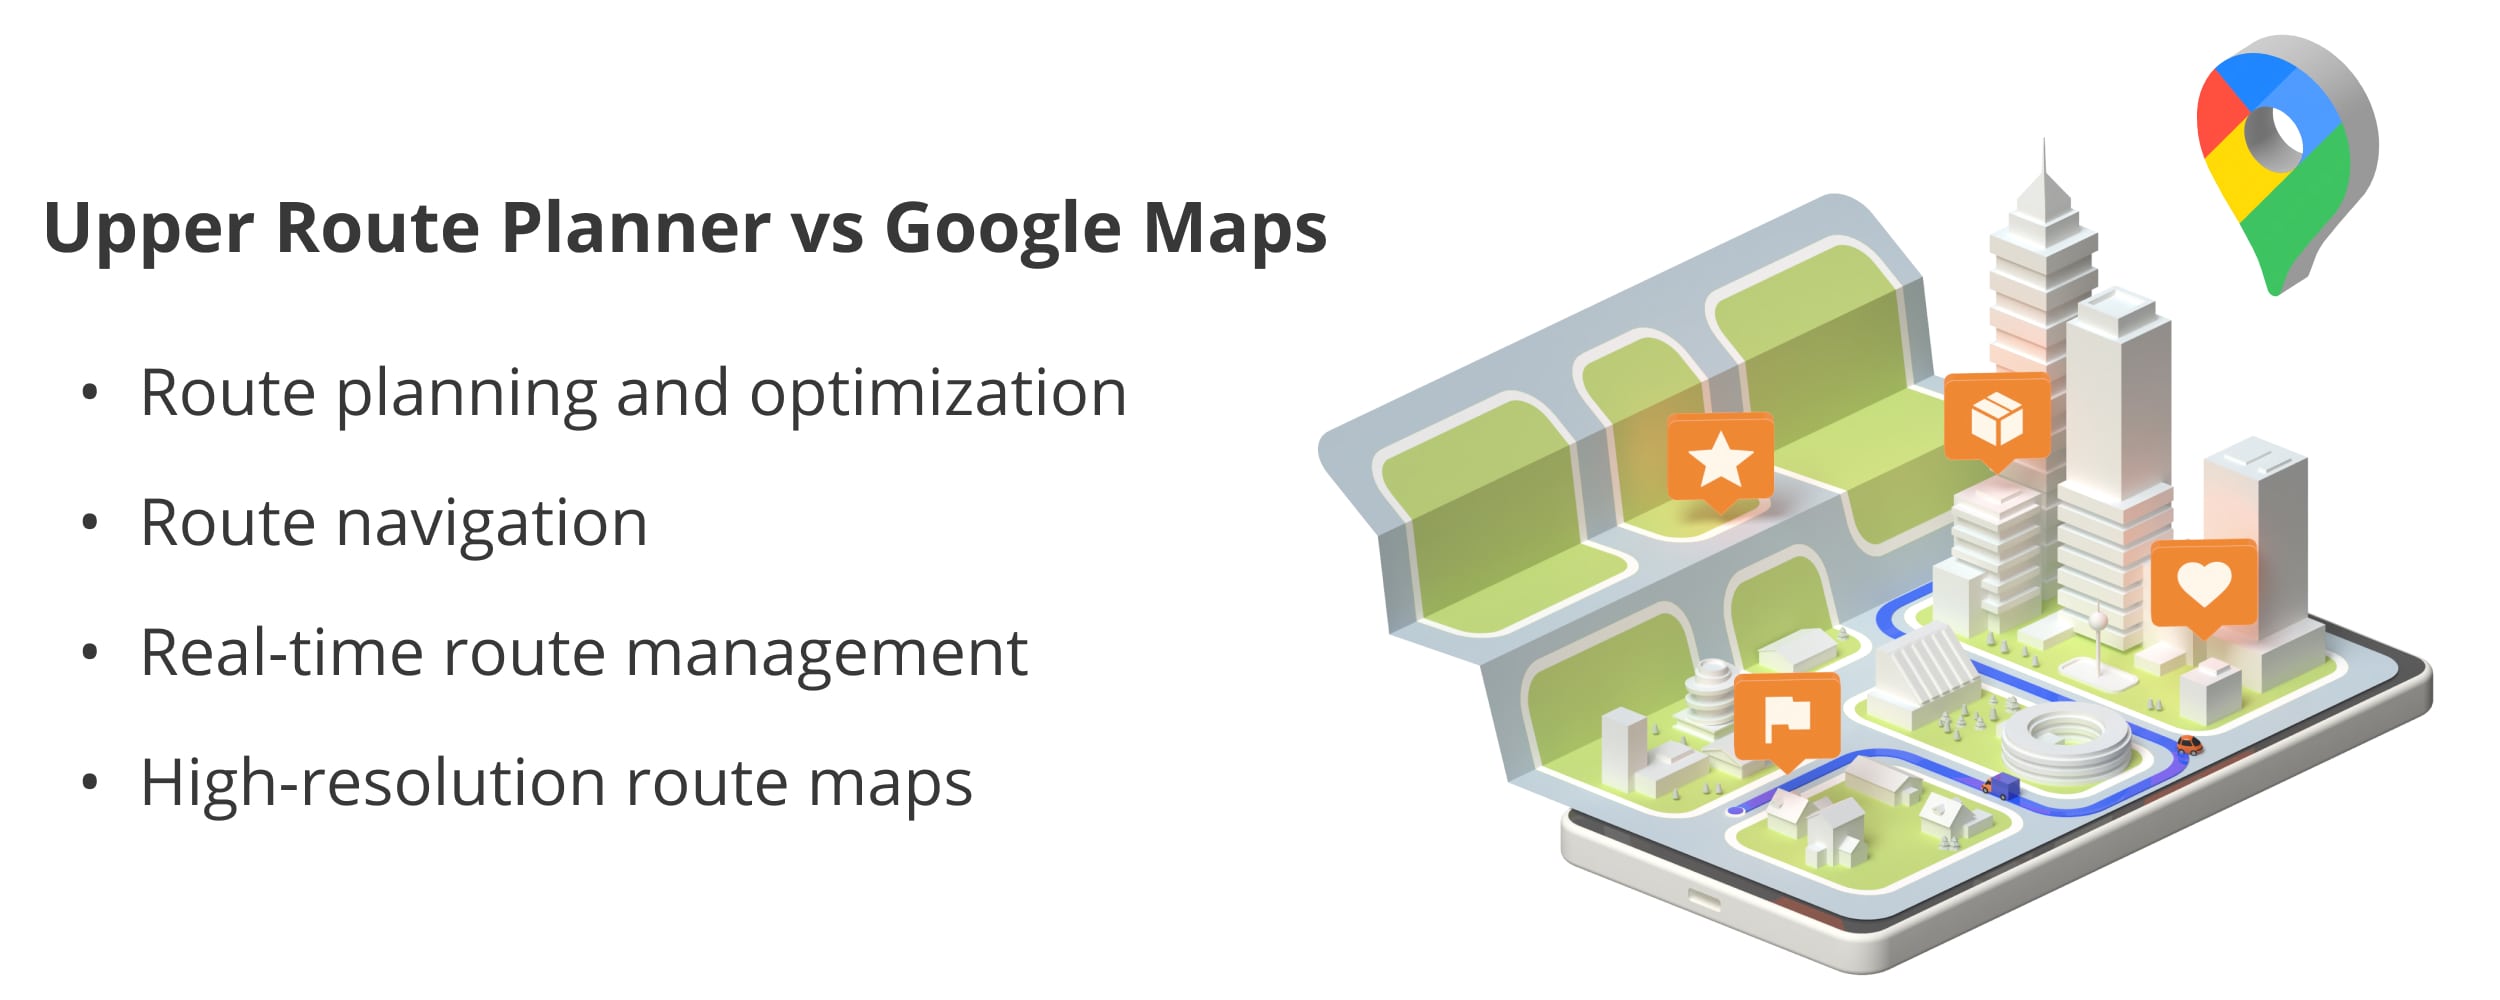  Upper Route Planner vs Google Maps feature comparison.